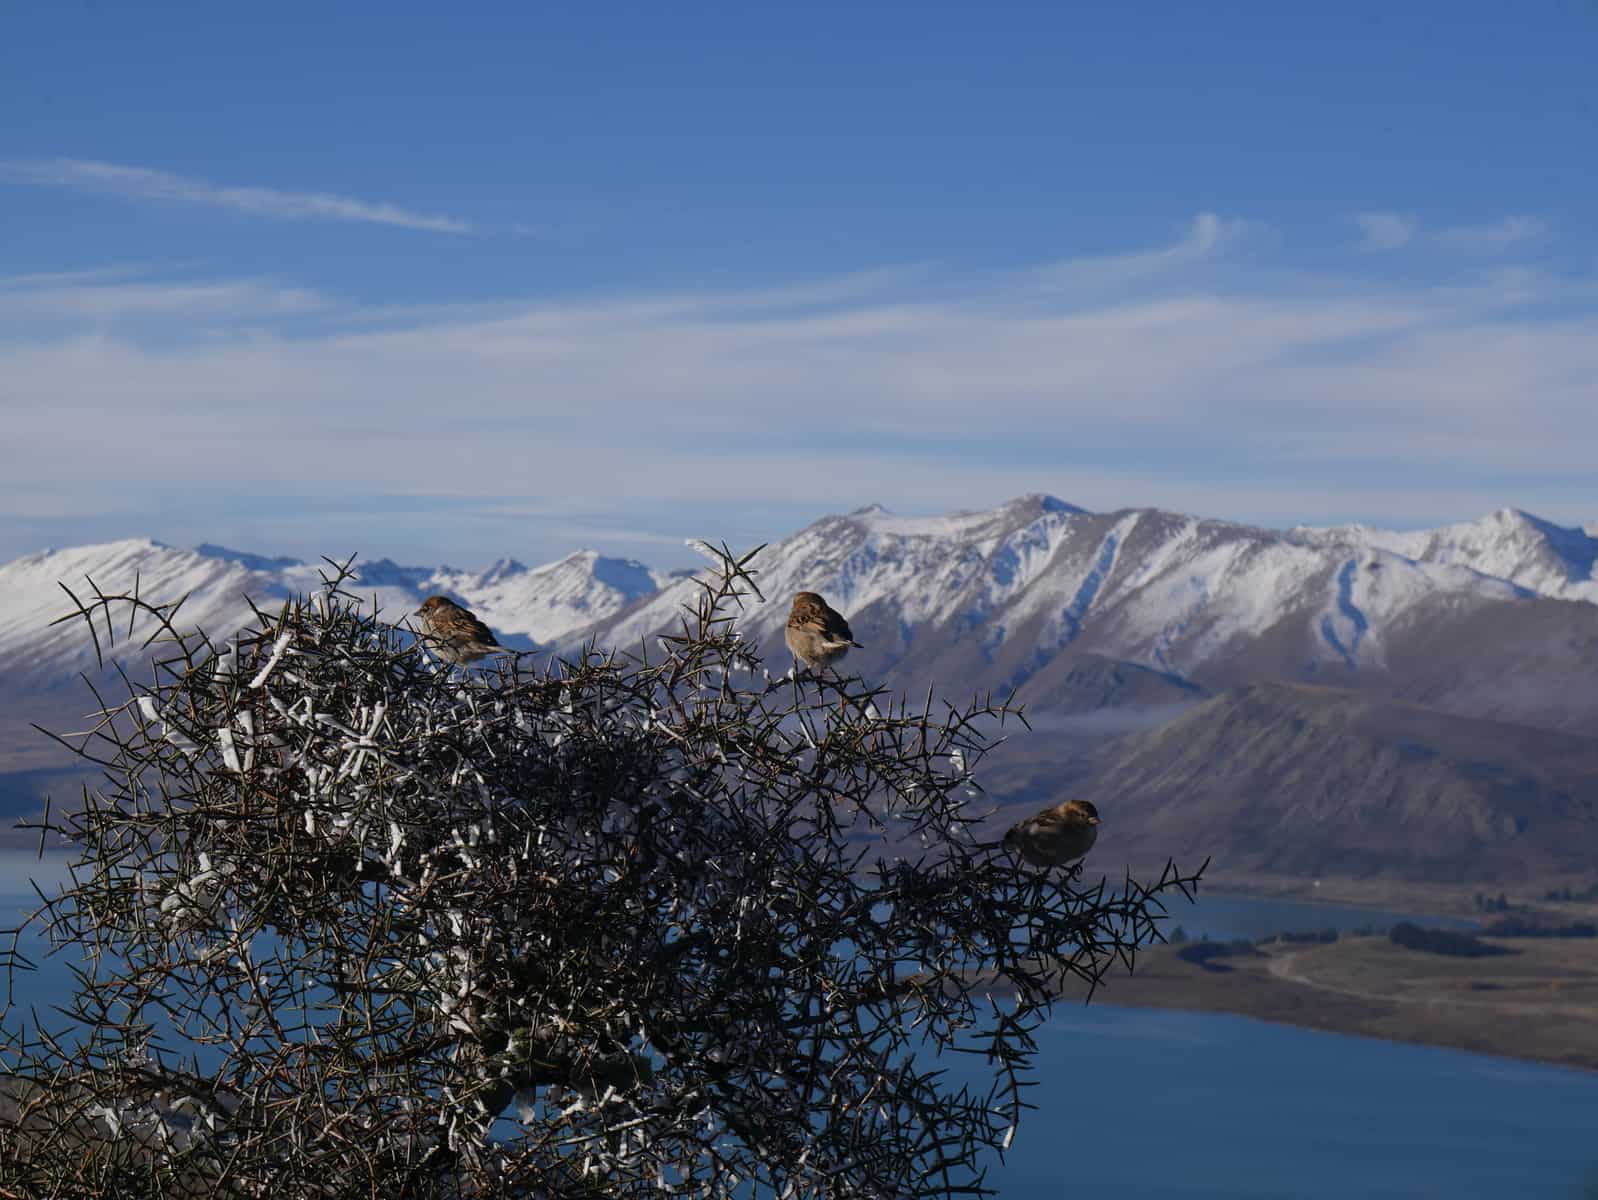 Birds in a tree in New Zealand